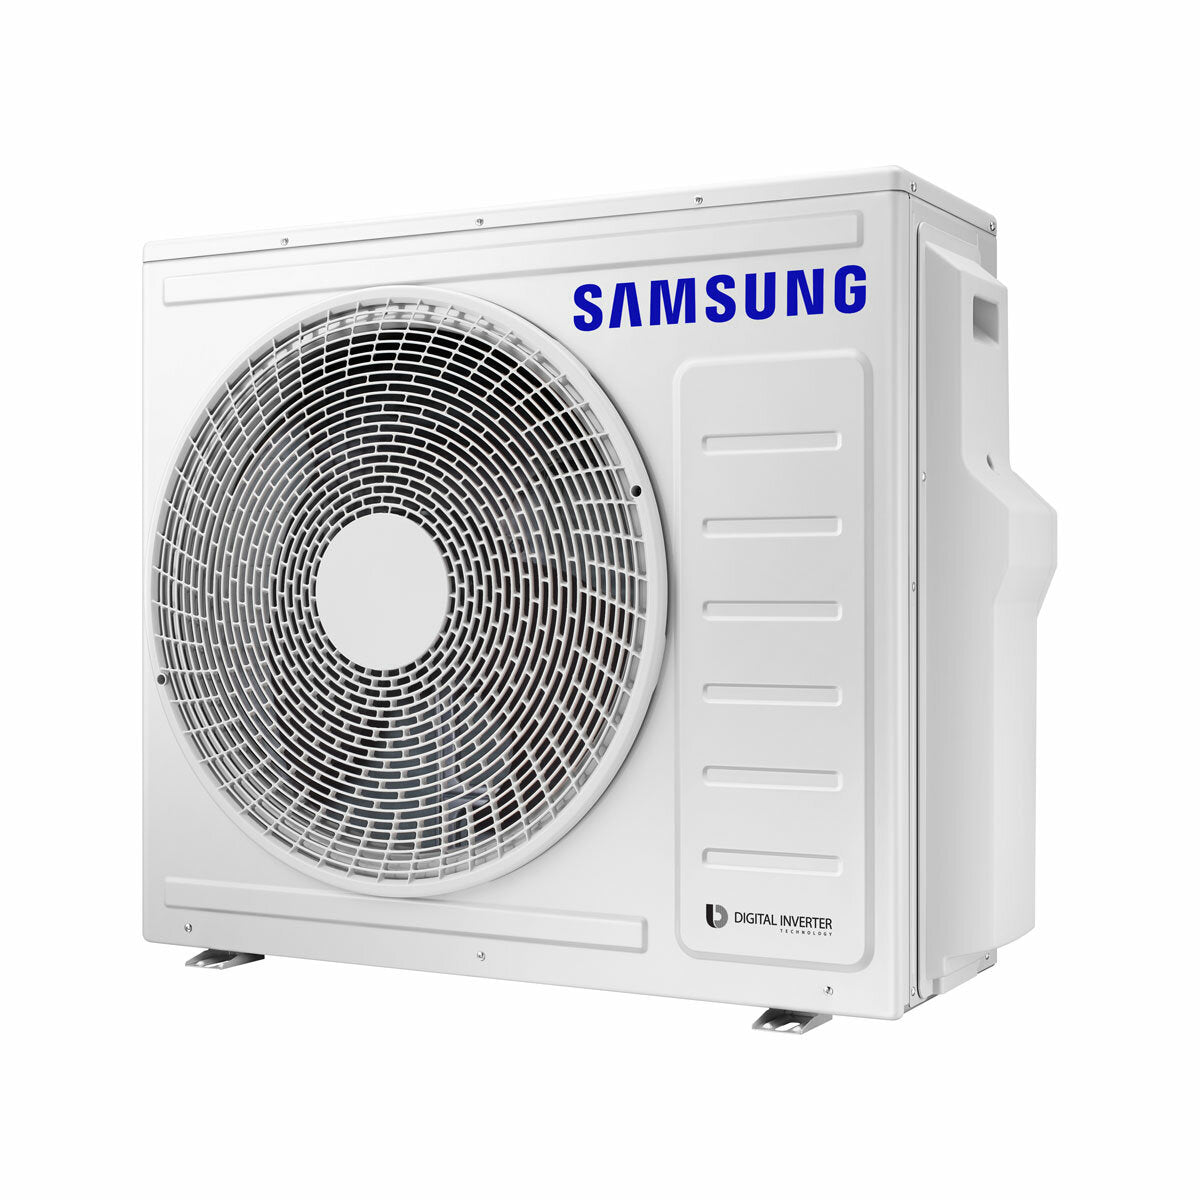 Samsung Climatiseur Windfree 4 voies trial split 7000 + 12000 + 12000 BTU inverter A++ unité extérieure 6,8 kW